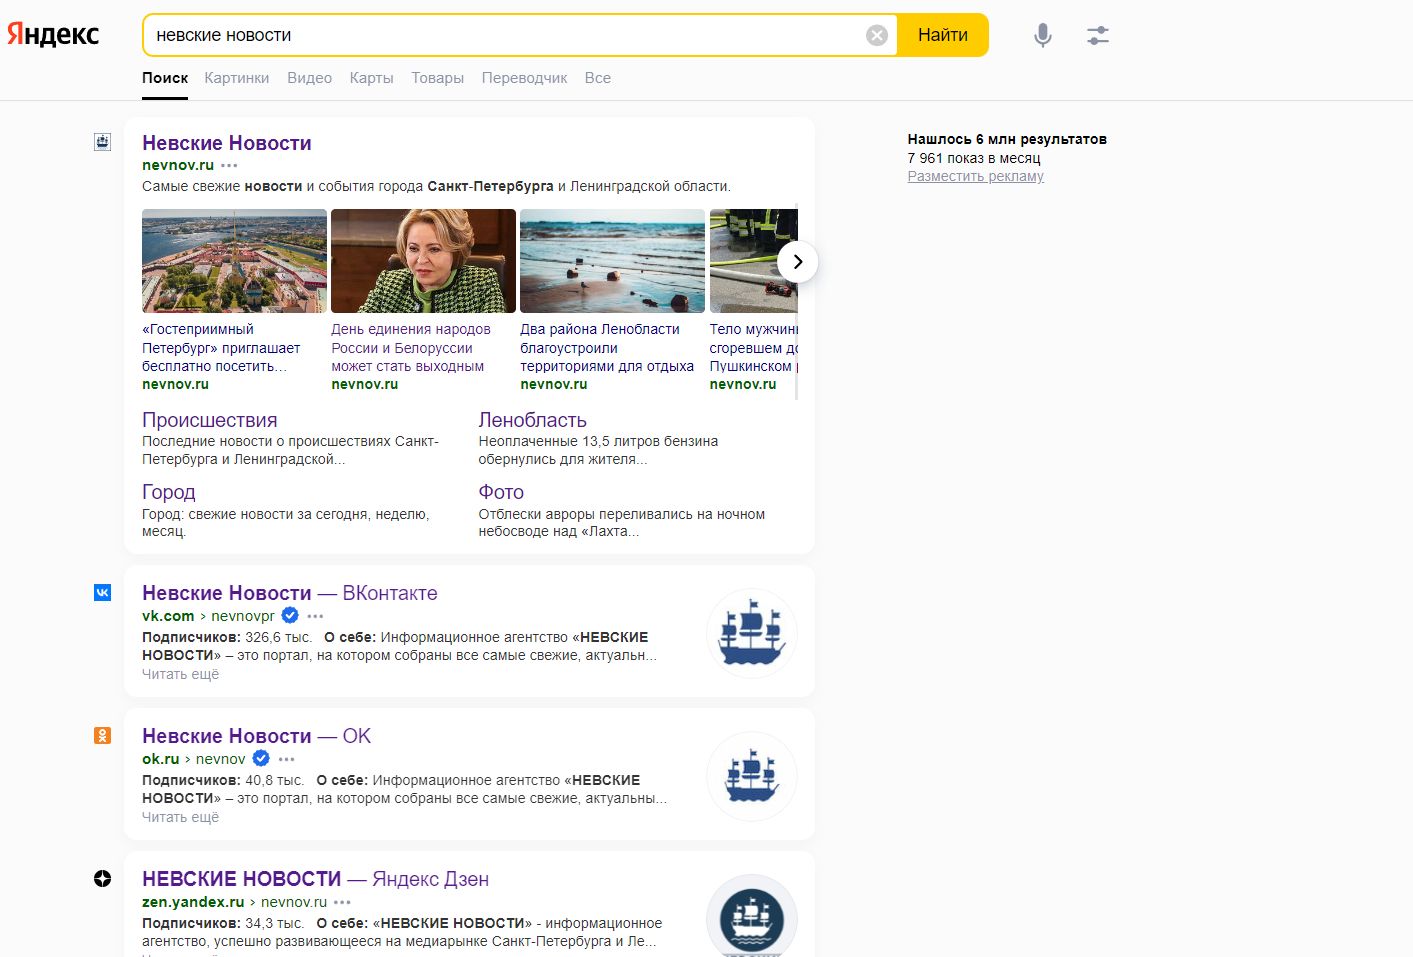 Что произошло с «Яндексом», почему открывается «Дзен», куда пропала почта и где теперь читать новости